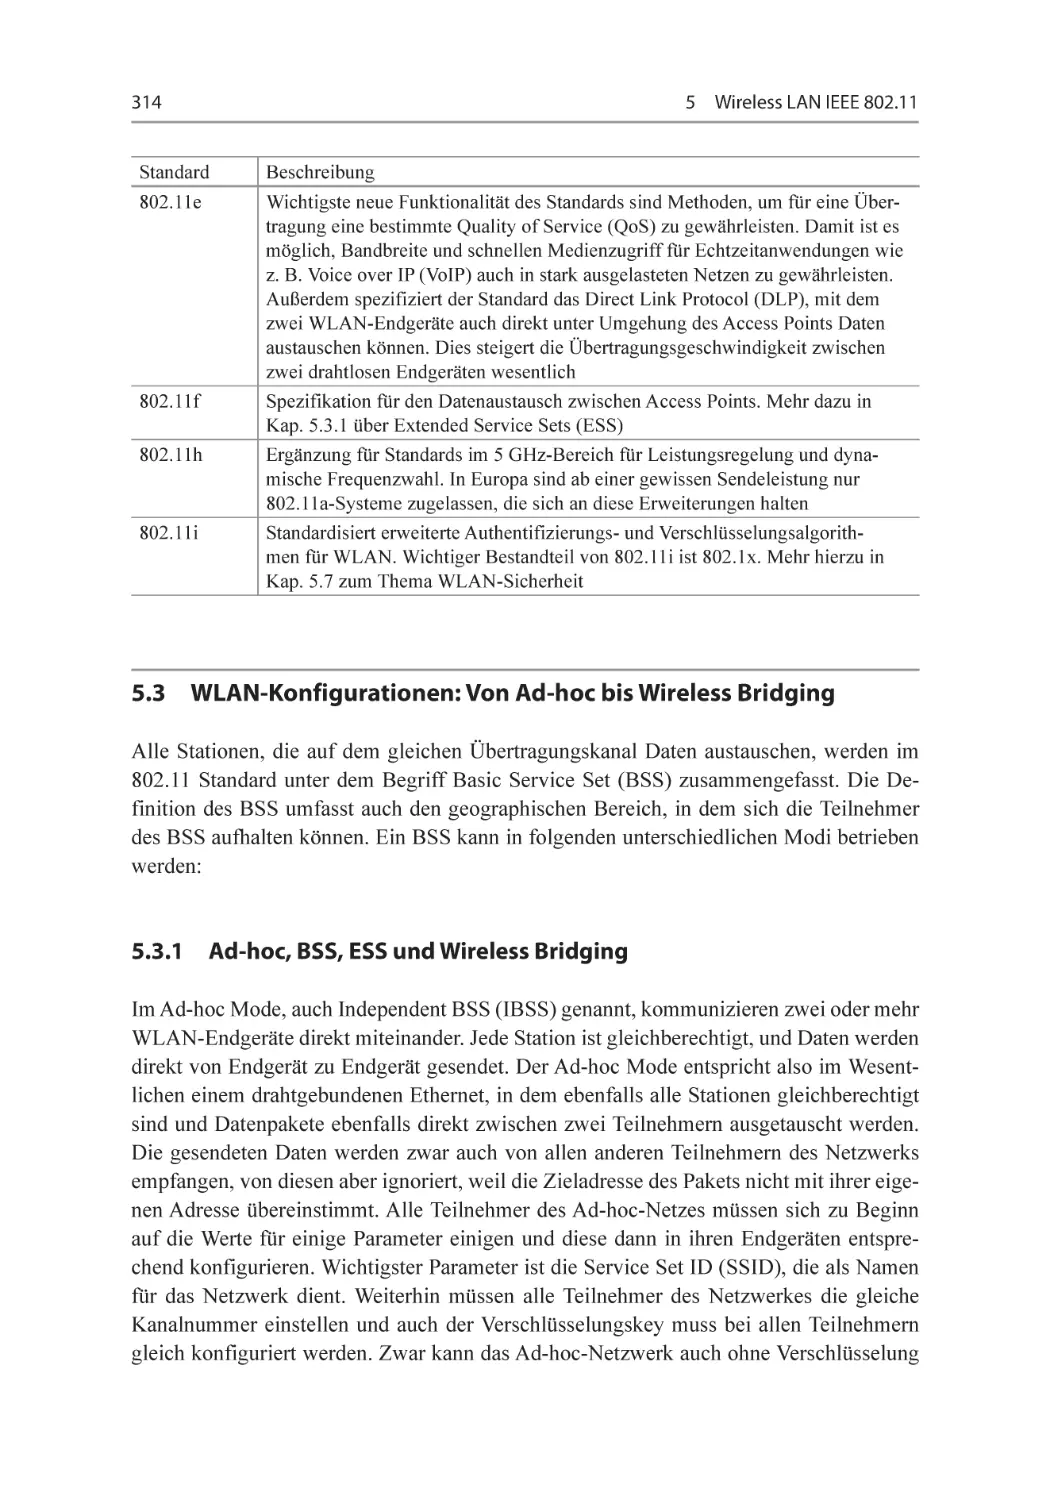 5.3 WLAN-Konfigurationen
5.3.1 Ad-hoc, BSS, ESS und Wireless Bridging